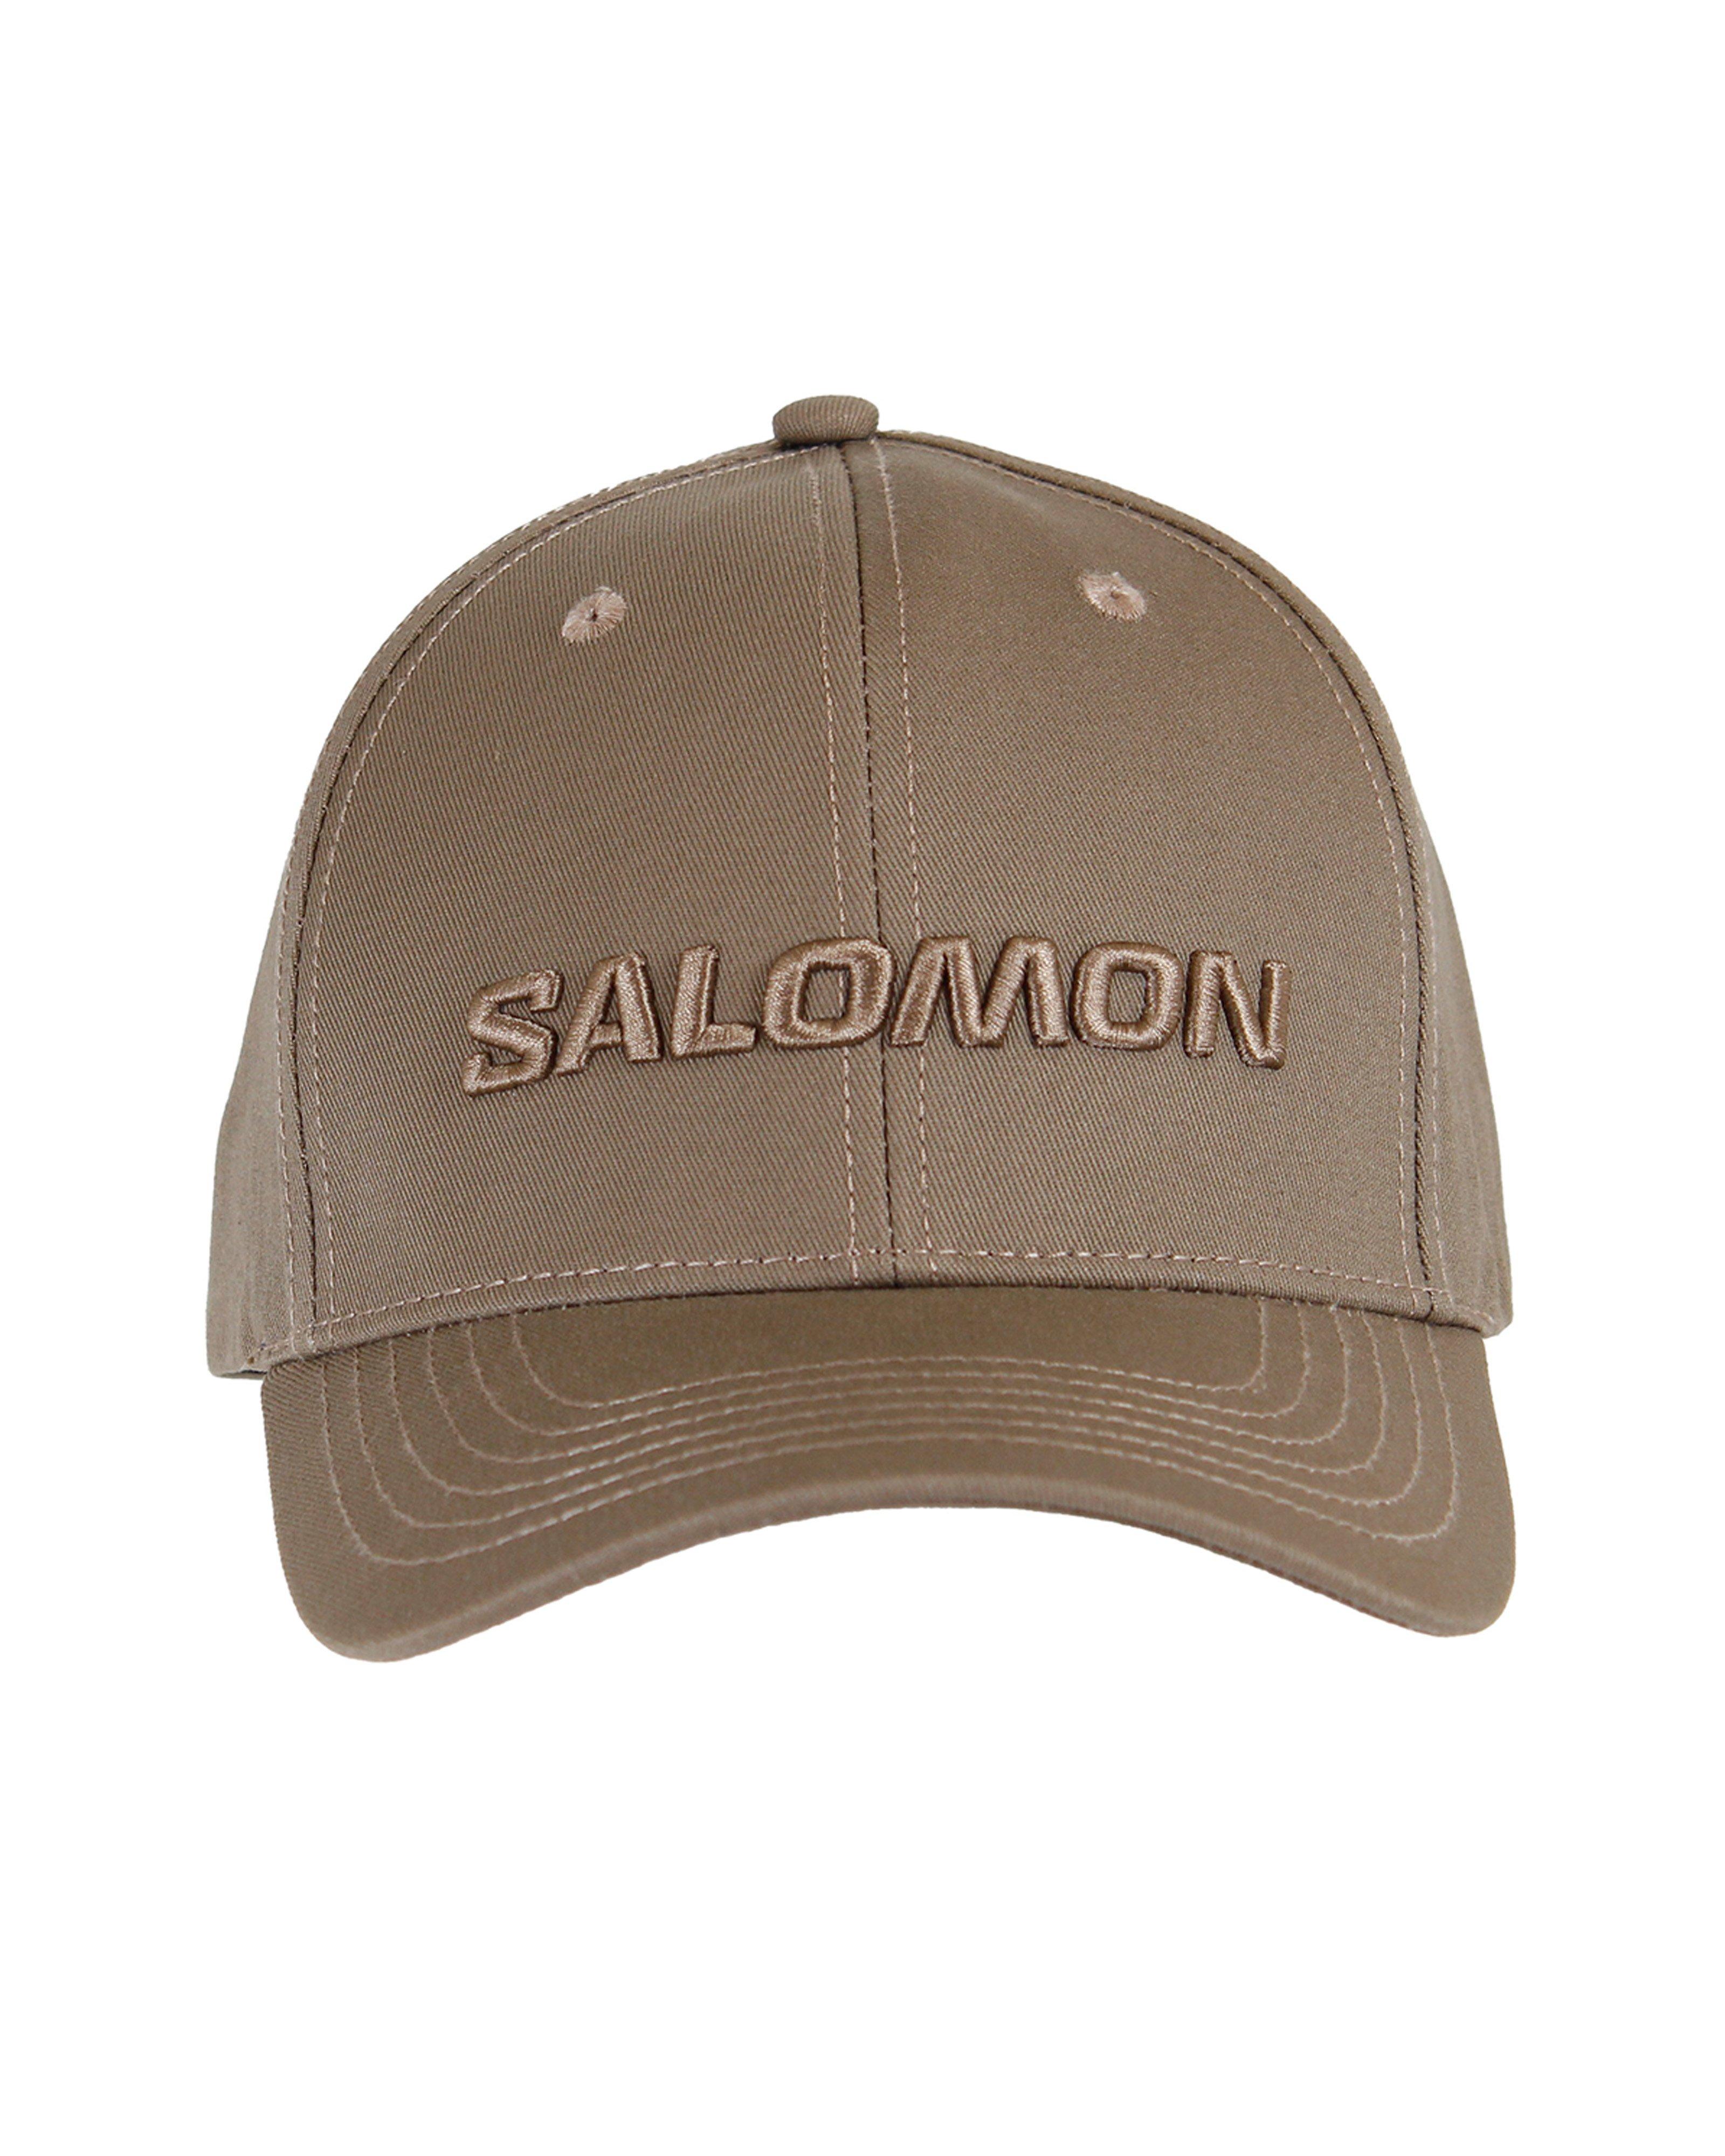 Salomon Adjustable Cap -  Taupe